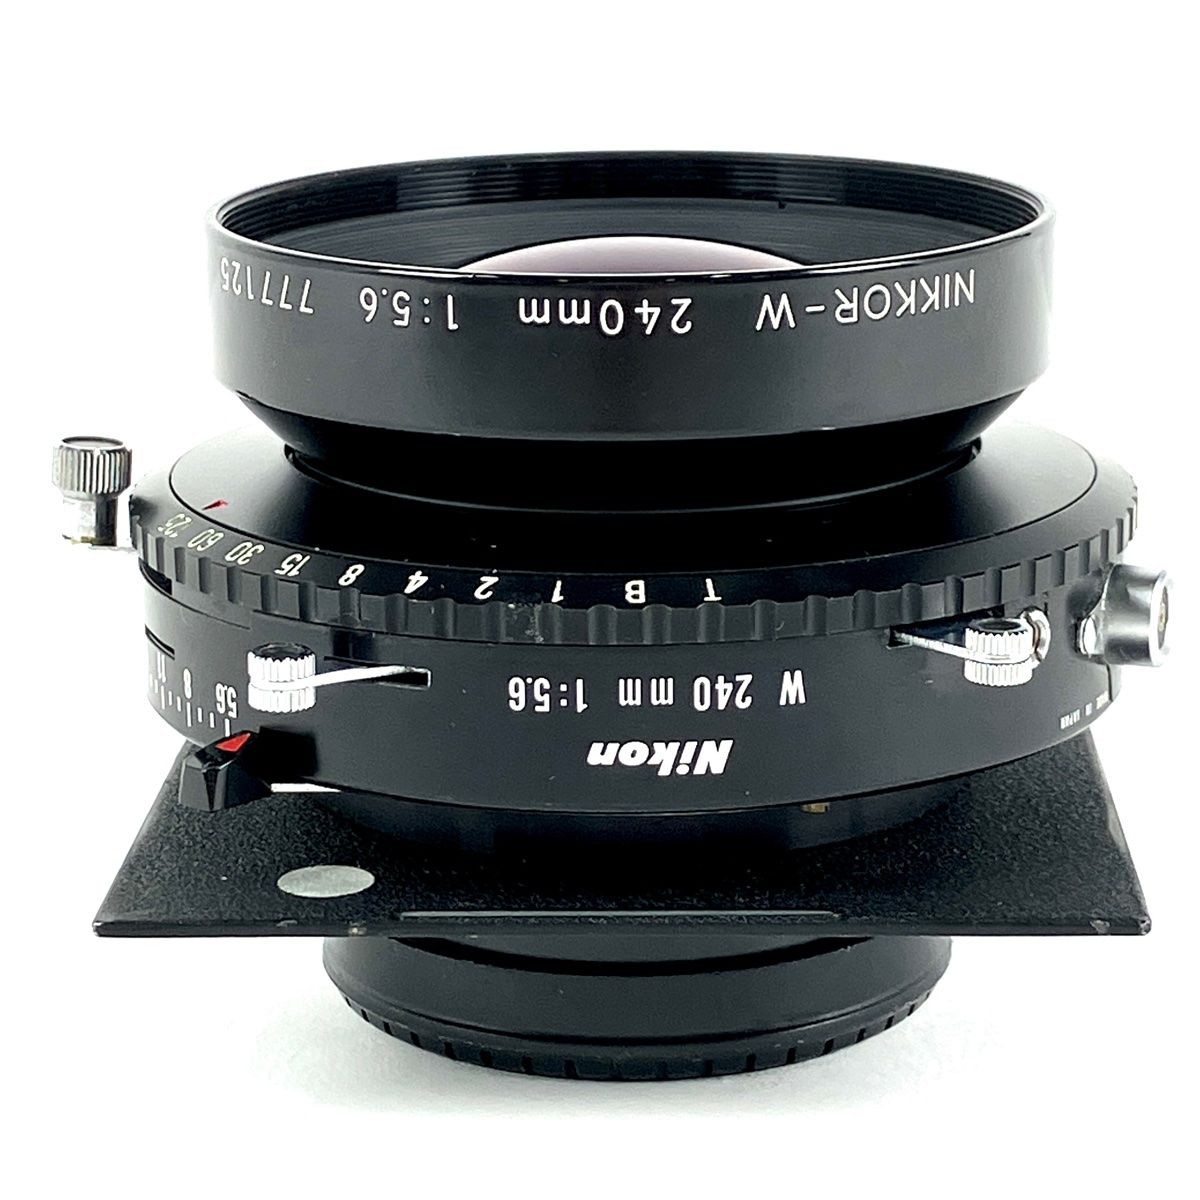 ニコン Nikon NIKKOR-W 240mm F5.6 大判カメラ用レンズ 【中古